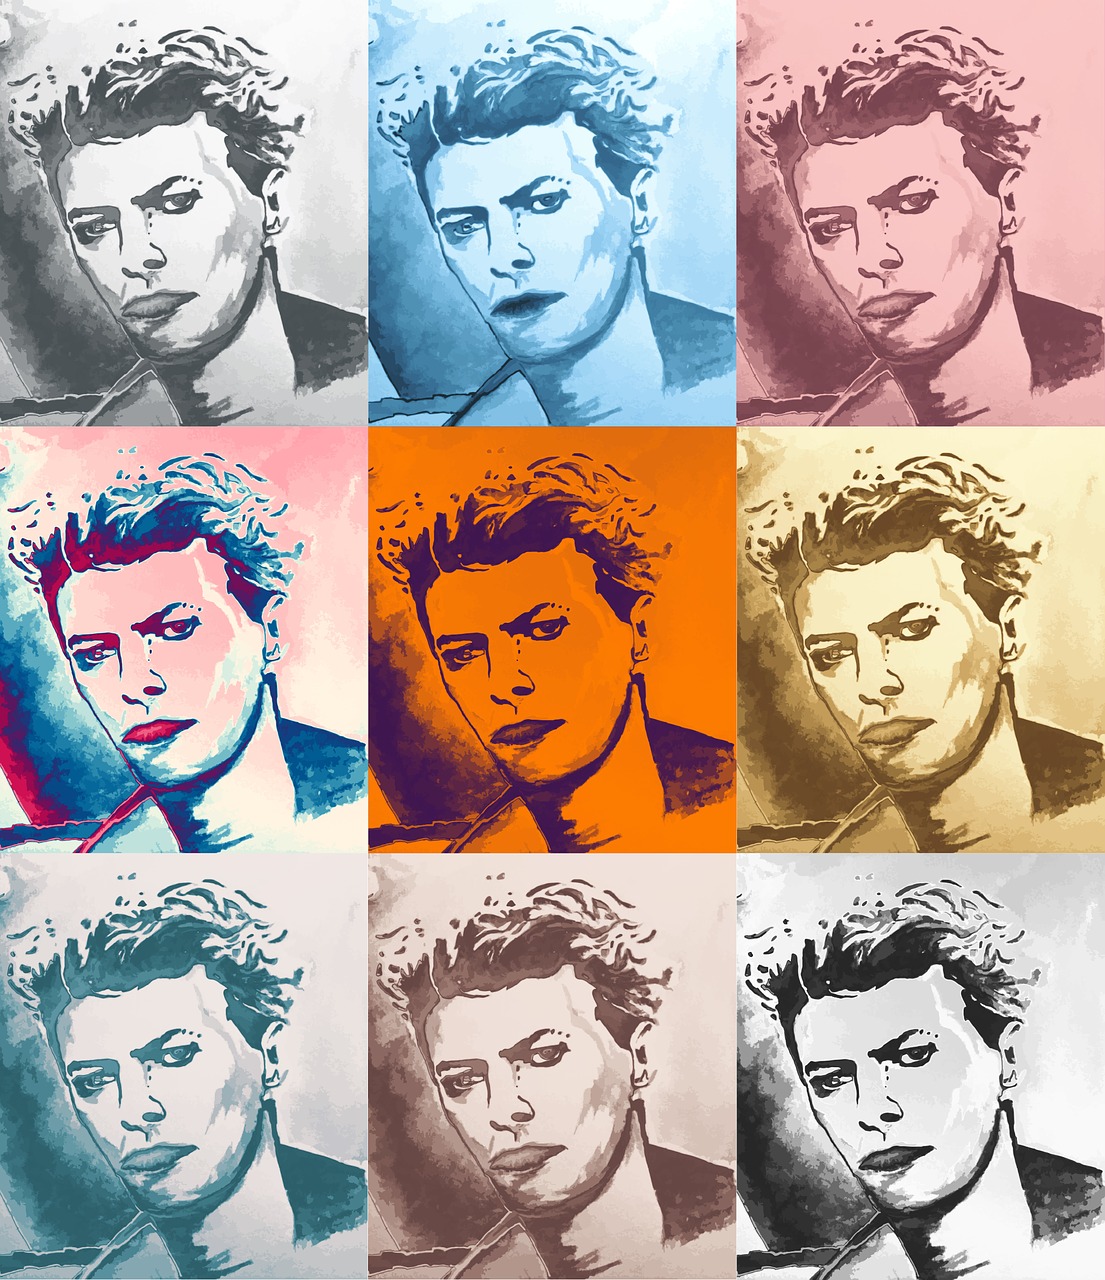 David Bowie Zeichnung von SCAPIN / pixabay.com